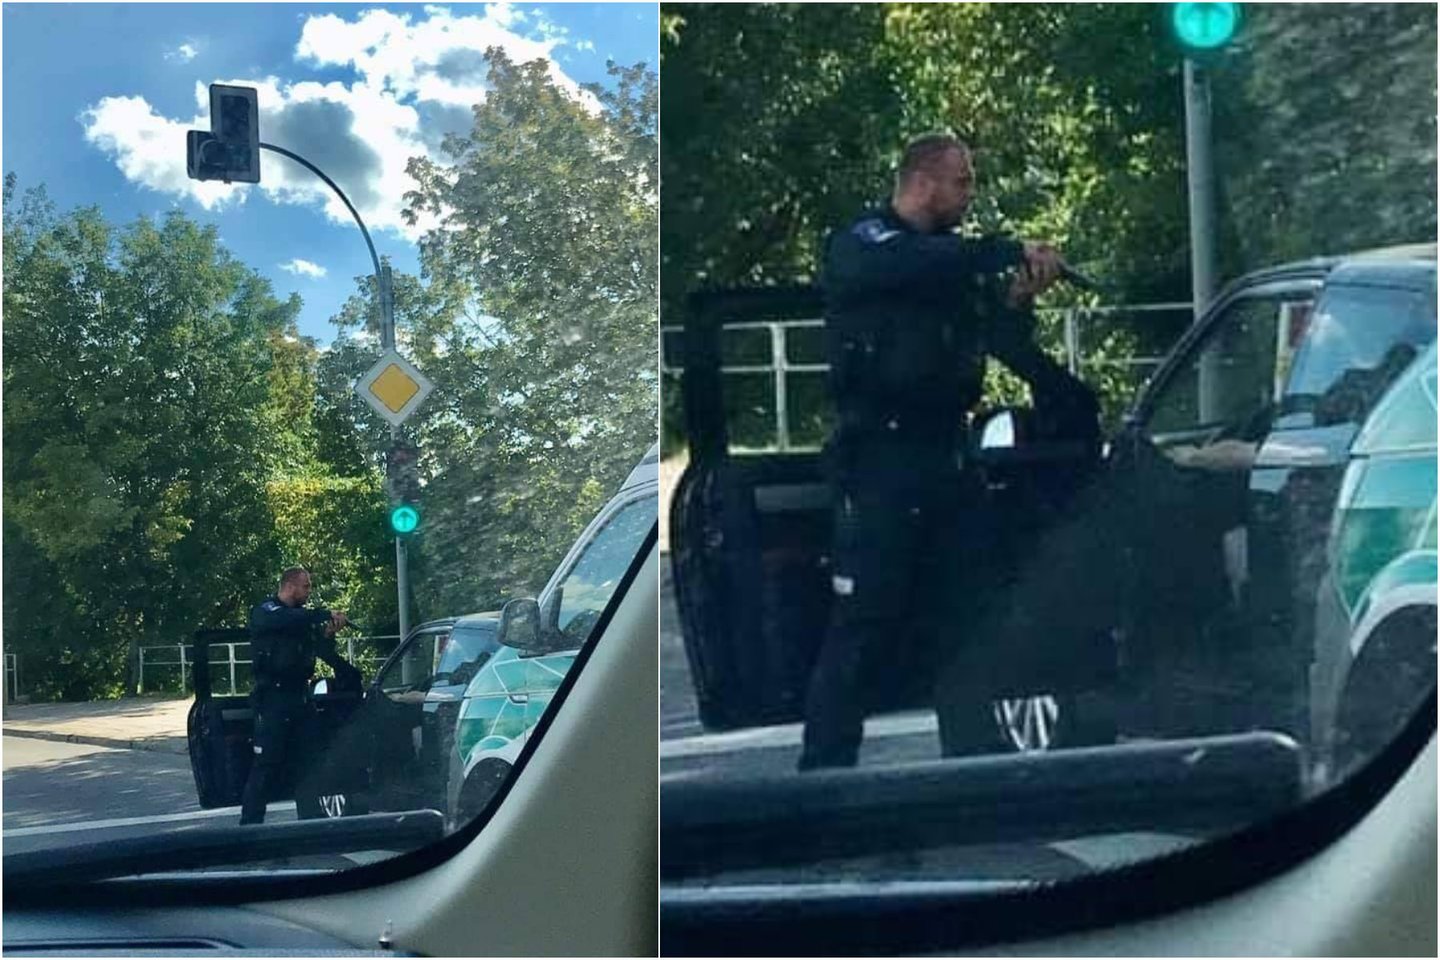 Šeštadienio vakarą socialiniame tinkle „Facebook“ pasklido nuotrauka, kurioje užfiksuotas pareigūnas su nutaikytu ginklu į automobilio vairuotoją. <br>facebook nuotr.